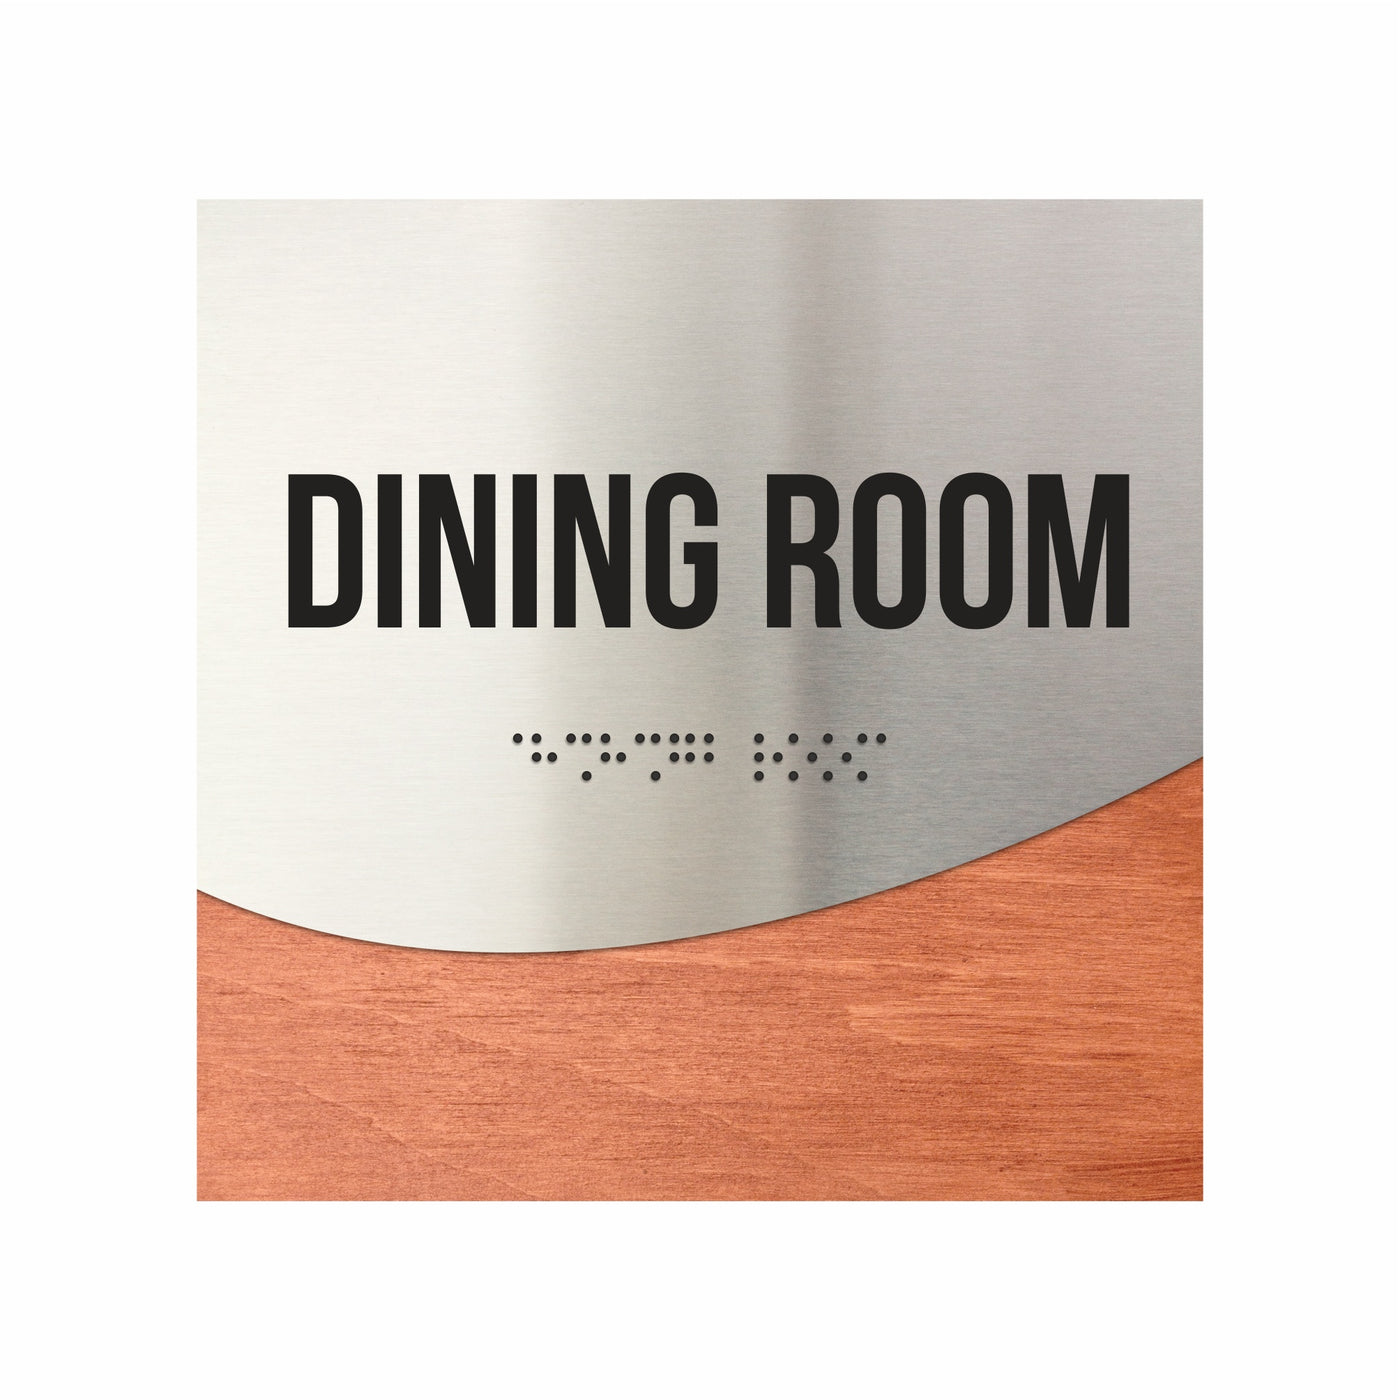 Wood & Steel Dining Room Signage "Jure" Design